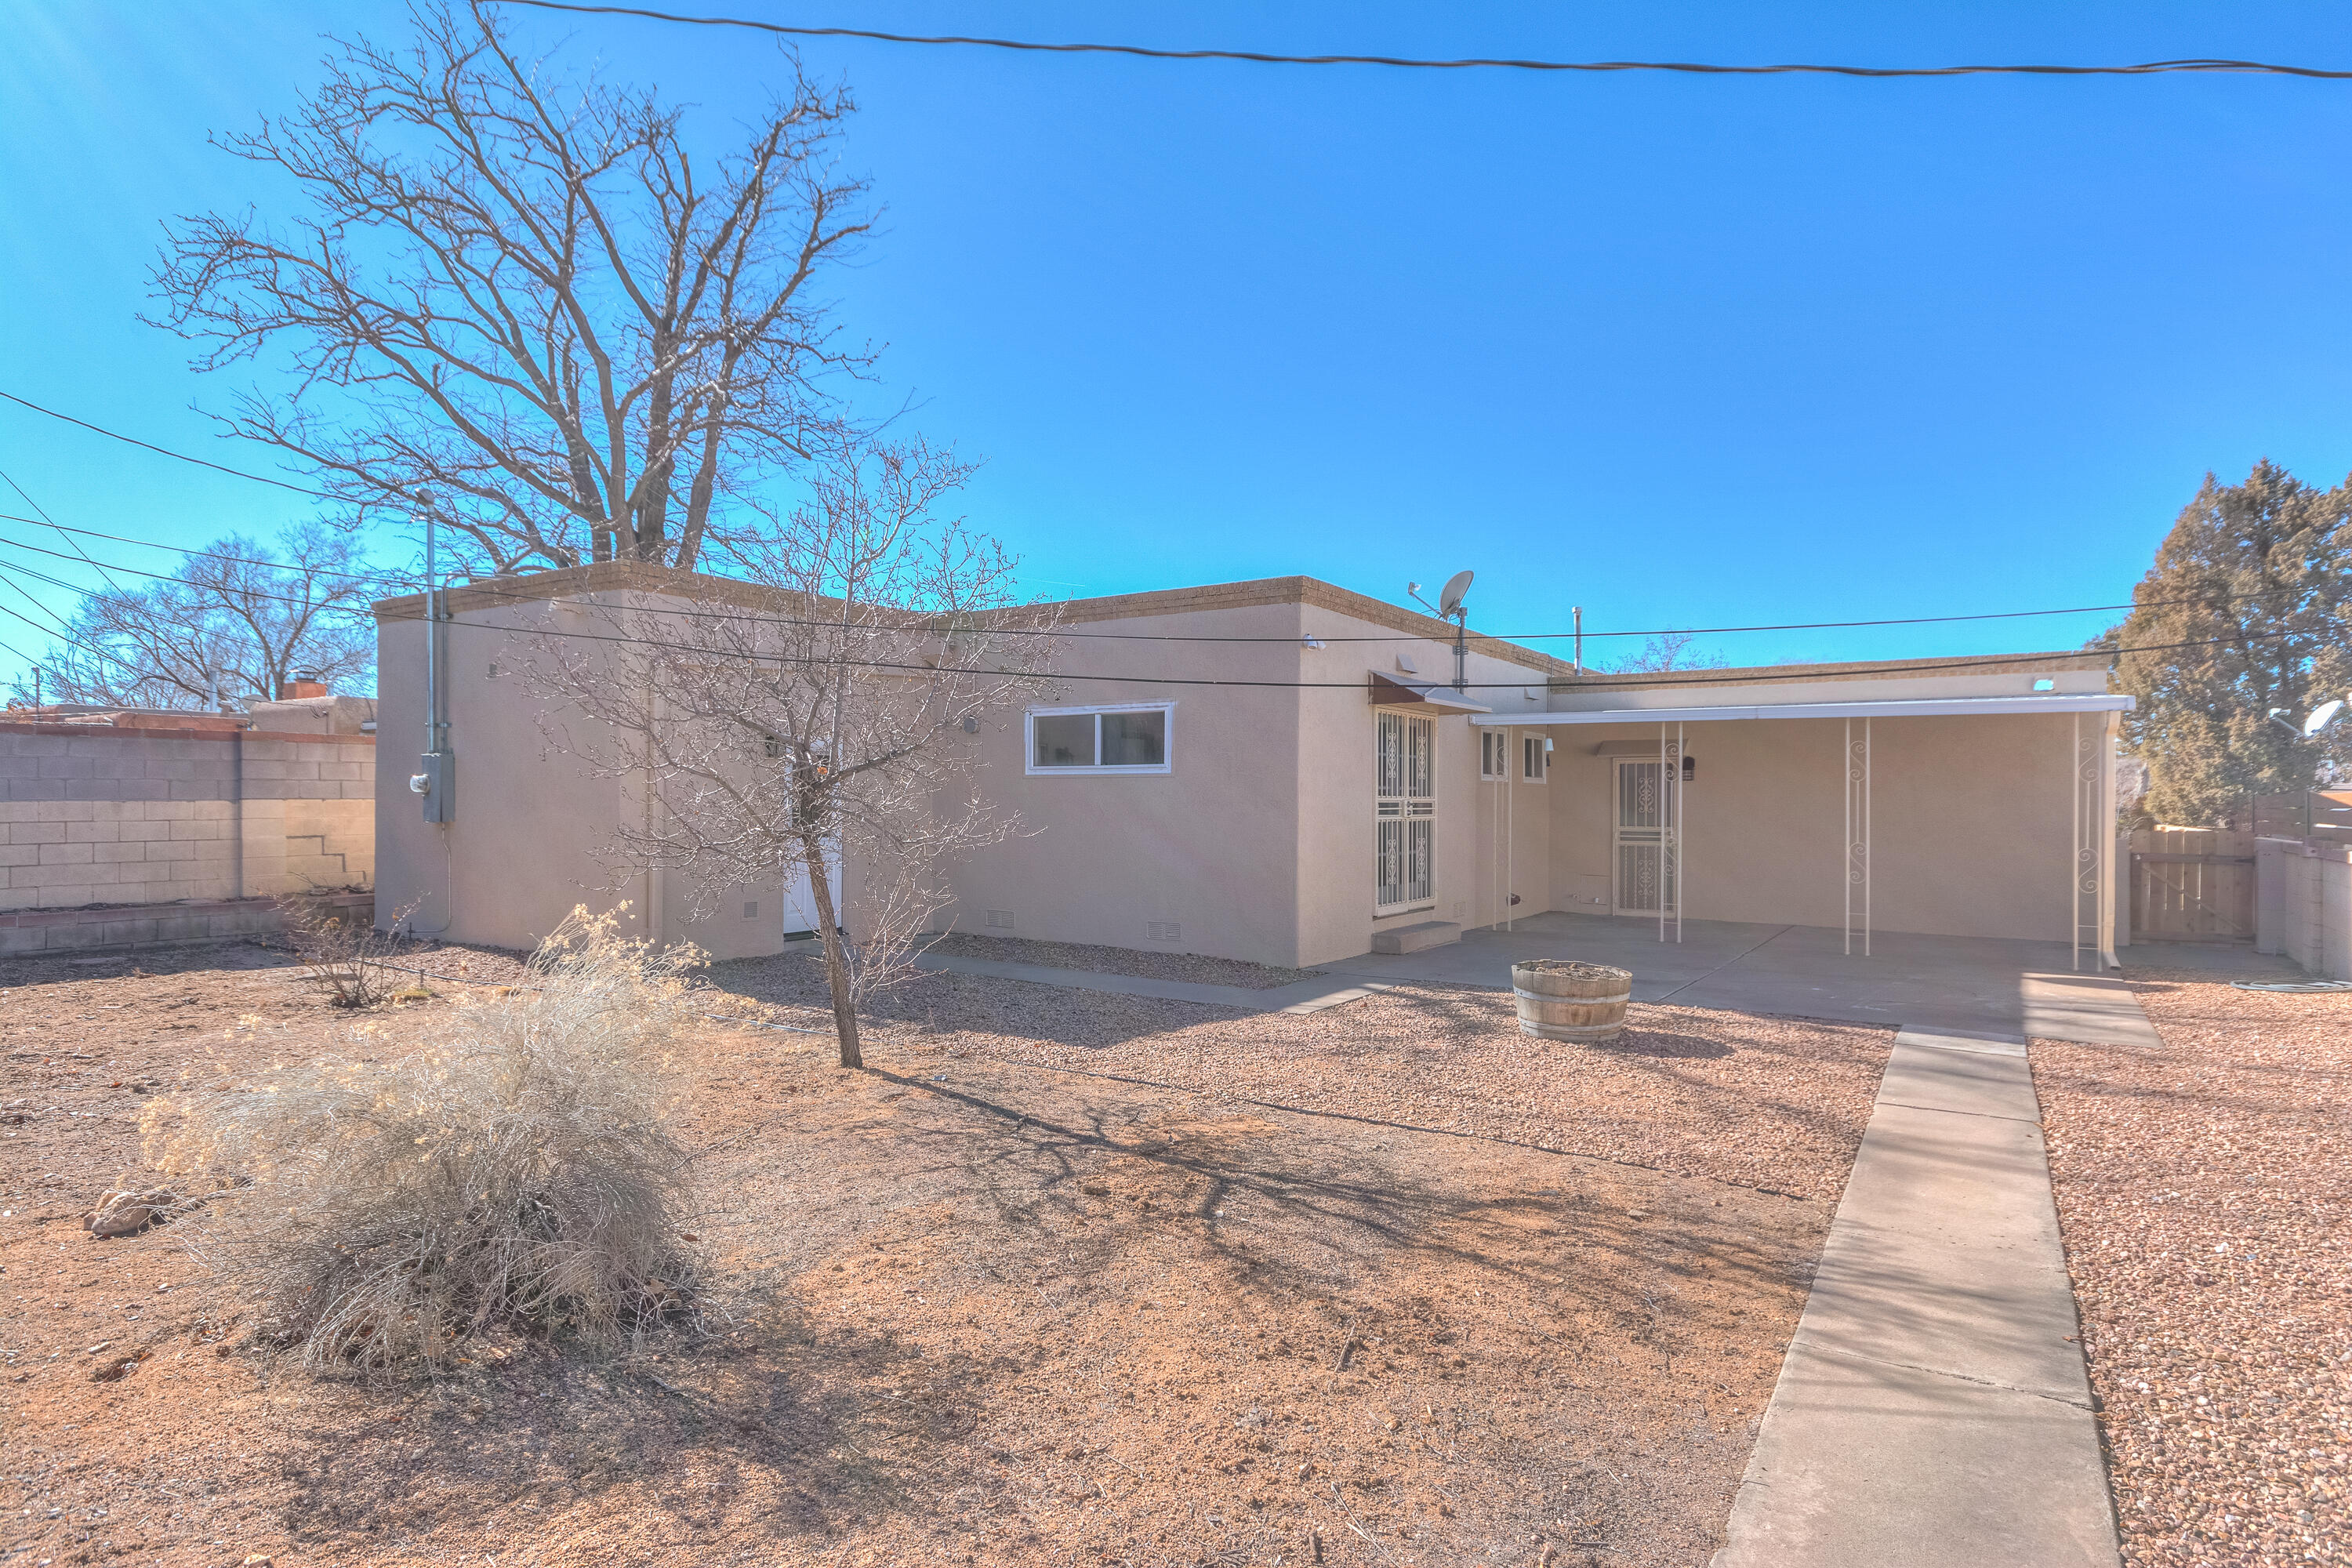 932 Manzano Street NE, Albuquerque, New Mexico 87110, 3 Bedrooms Bedrooms, ,2 BathroomsBathrooms,Residential,For Sale,932 Manzano Street NE,1055545